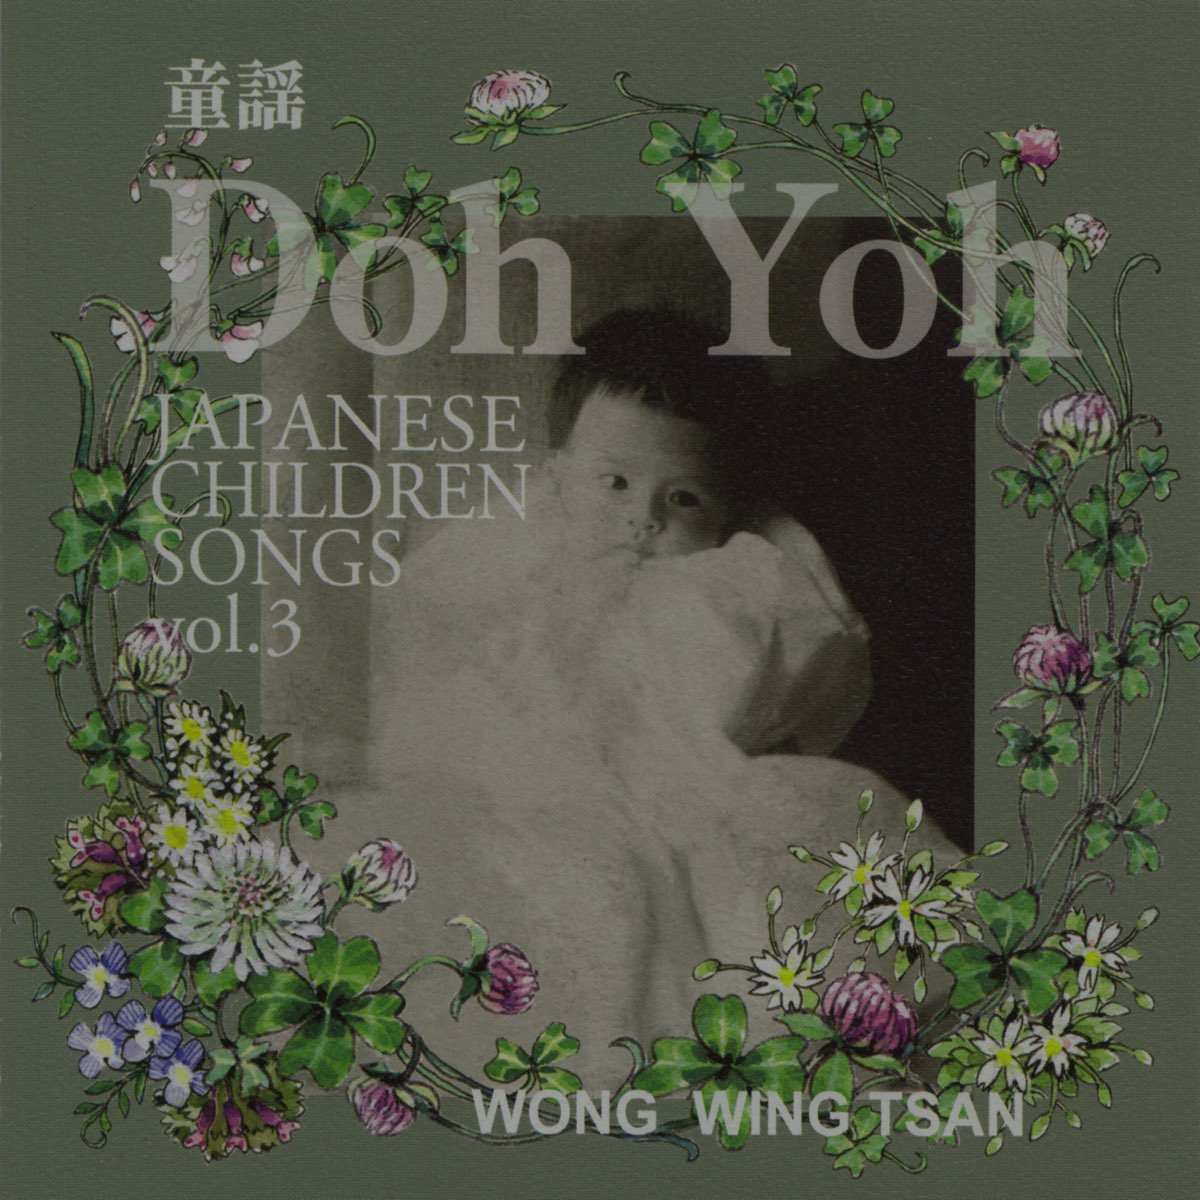 Apple Music 上黄永灿的专辑《Doh Yoh 童謡vol.3》